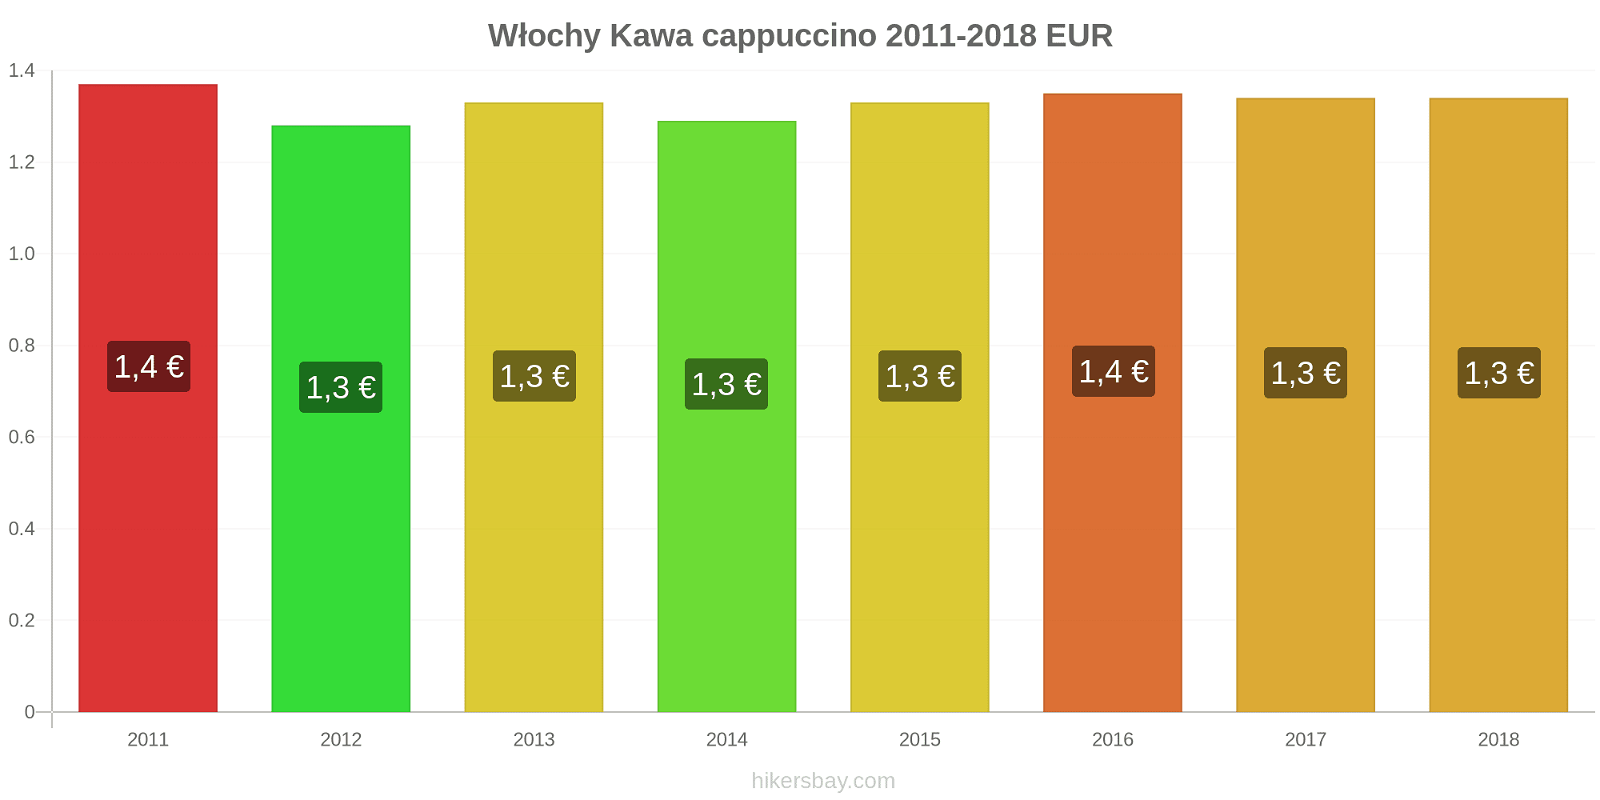 Włochy zmiany cen Kawa cappuccino hikersbay.com